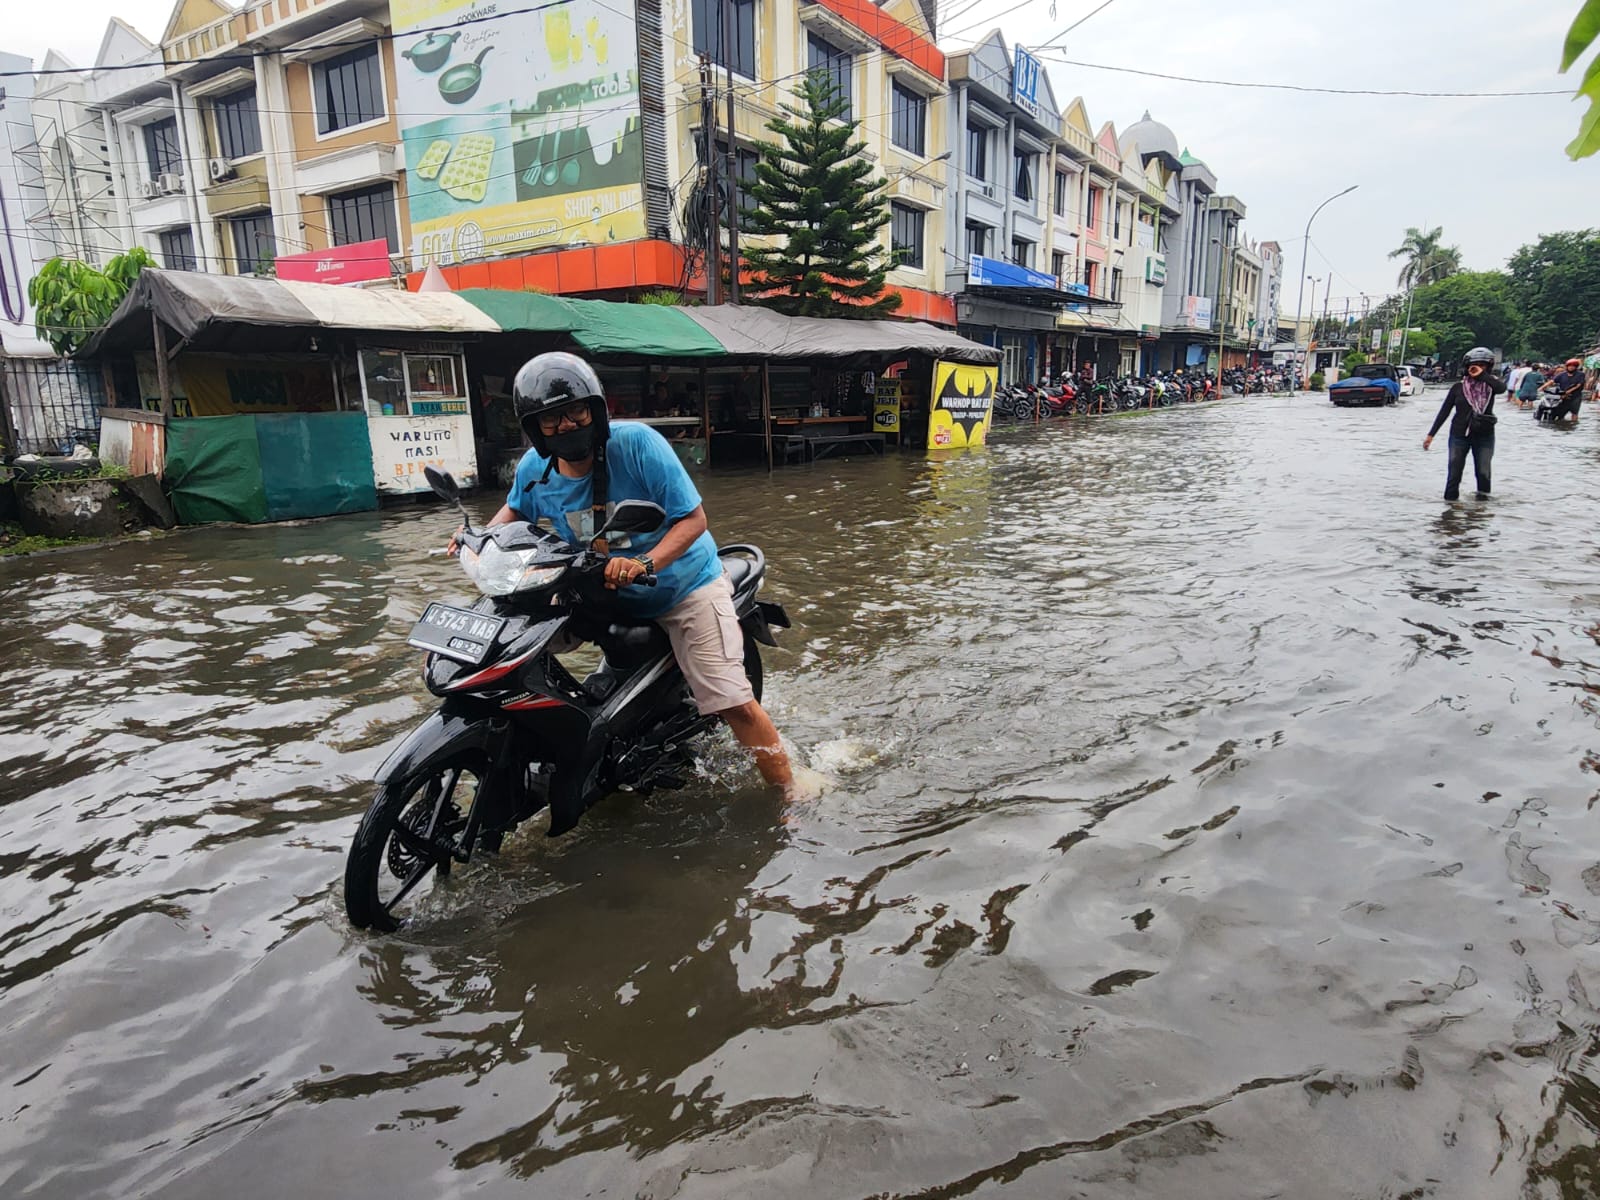 Pepelegi Terendam Banjir, Wakil Bupati Sidoarjo Pantau Kondisi Warga